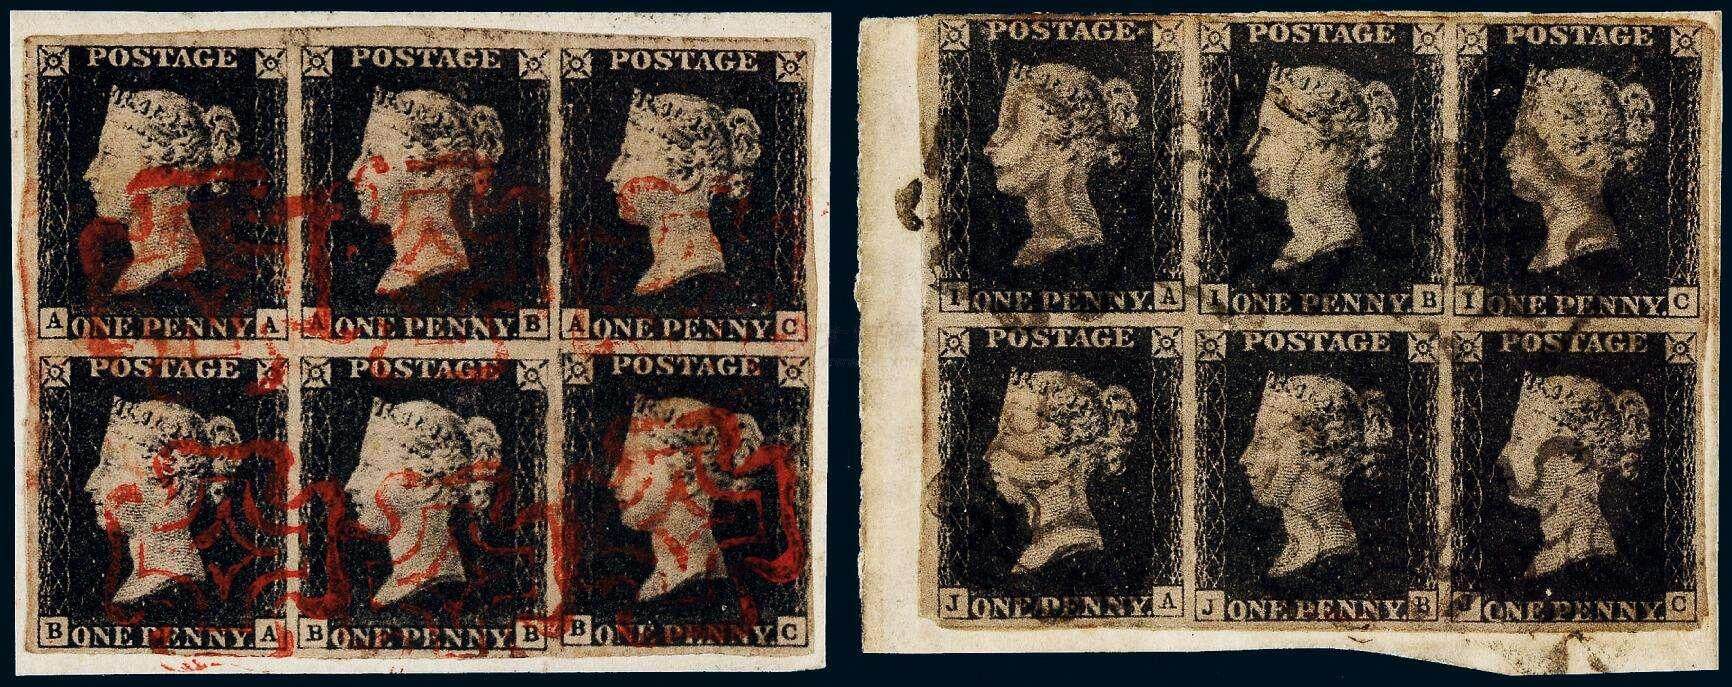 英国最早邮票黑便士,一张改变英国邮政制度的邮票,你见过吗